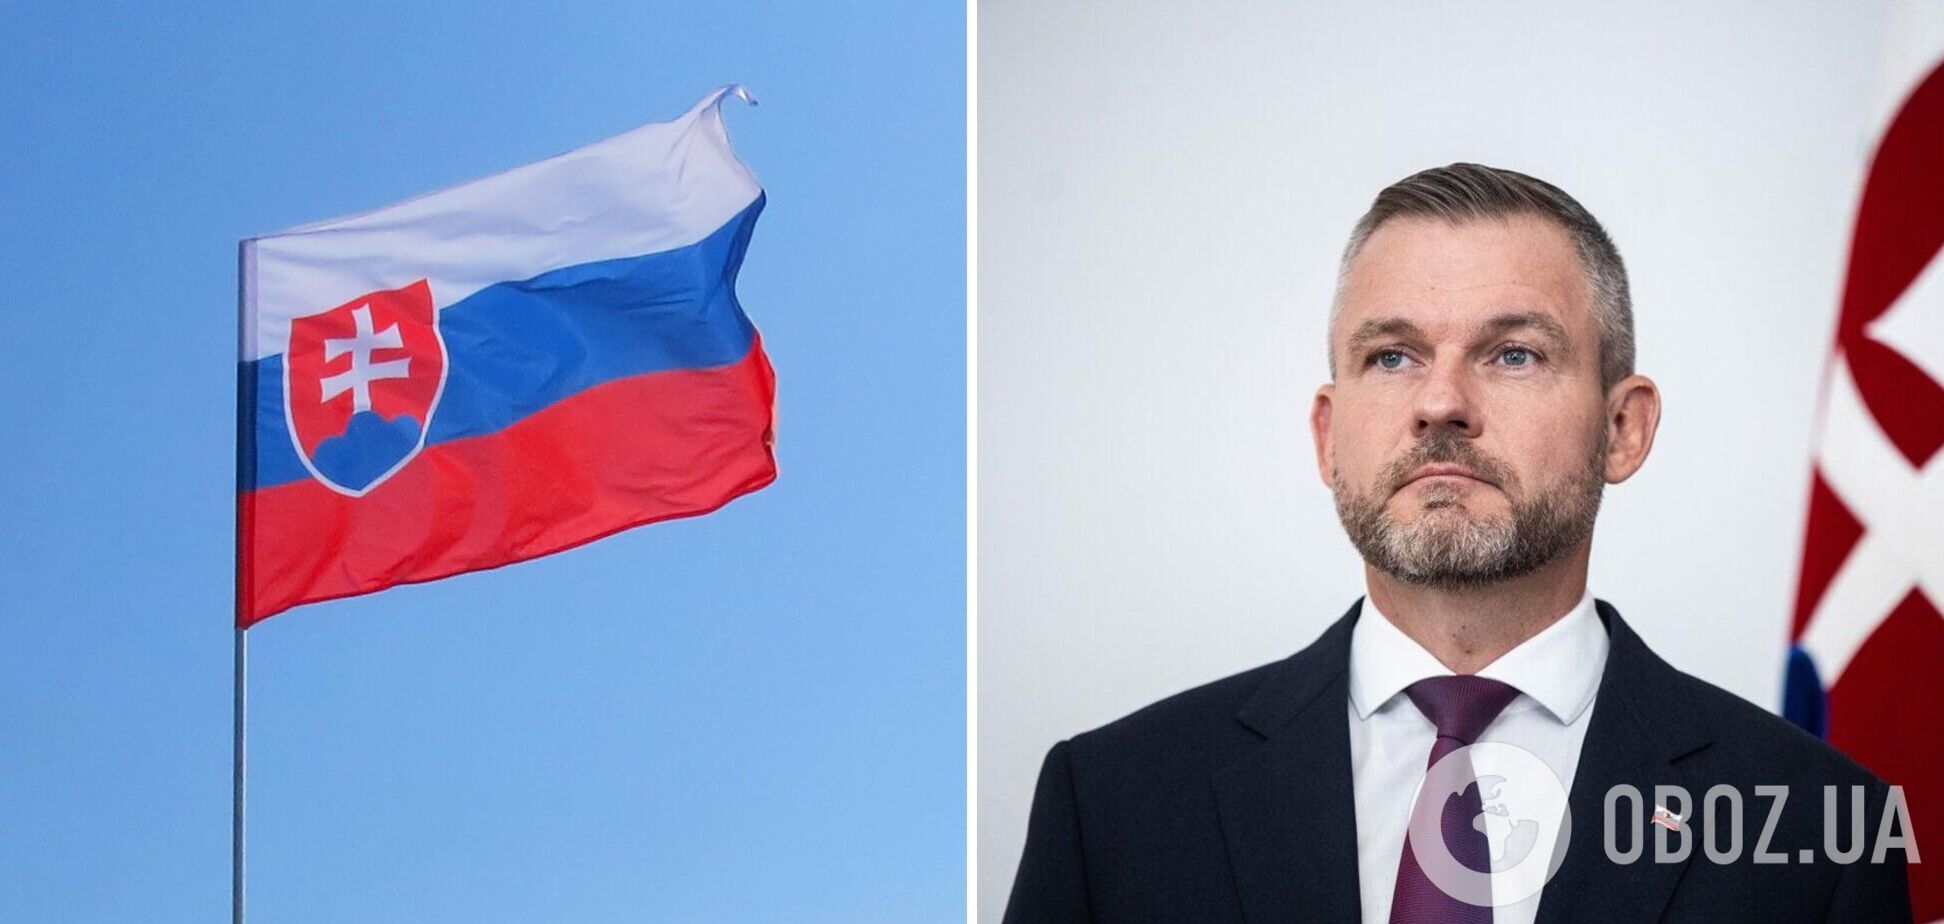 Словакия избрала нового президента: Пеллегрини победил с ощутимым отрывом. Что он говорил о войне в Украине